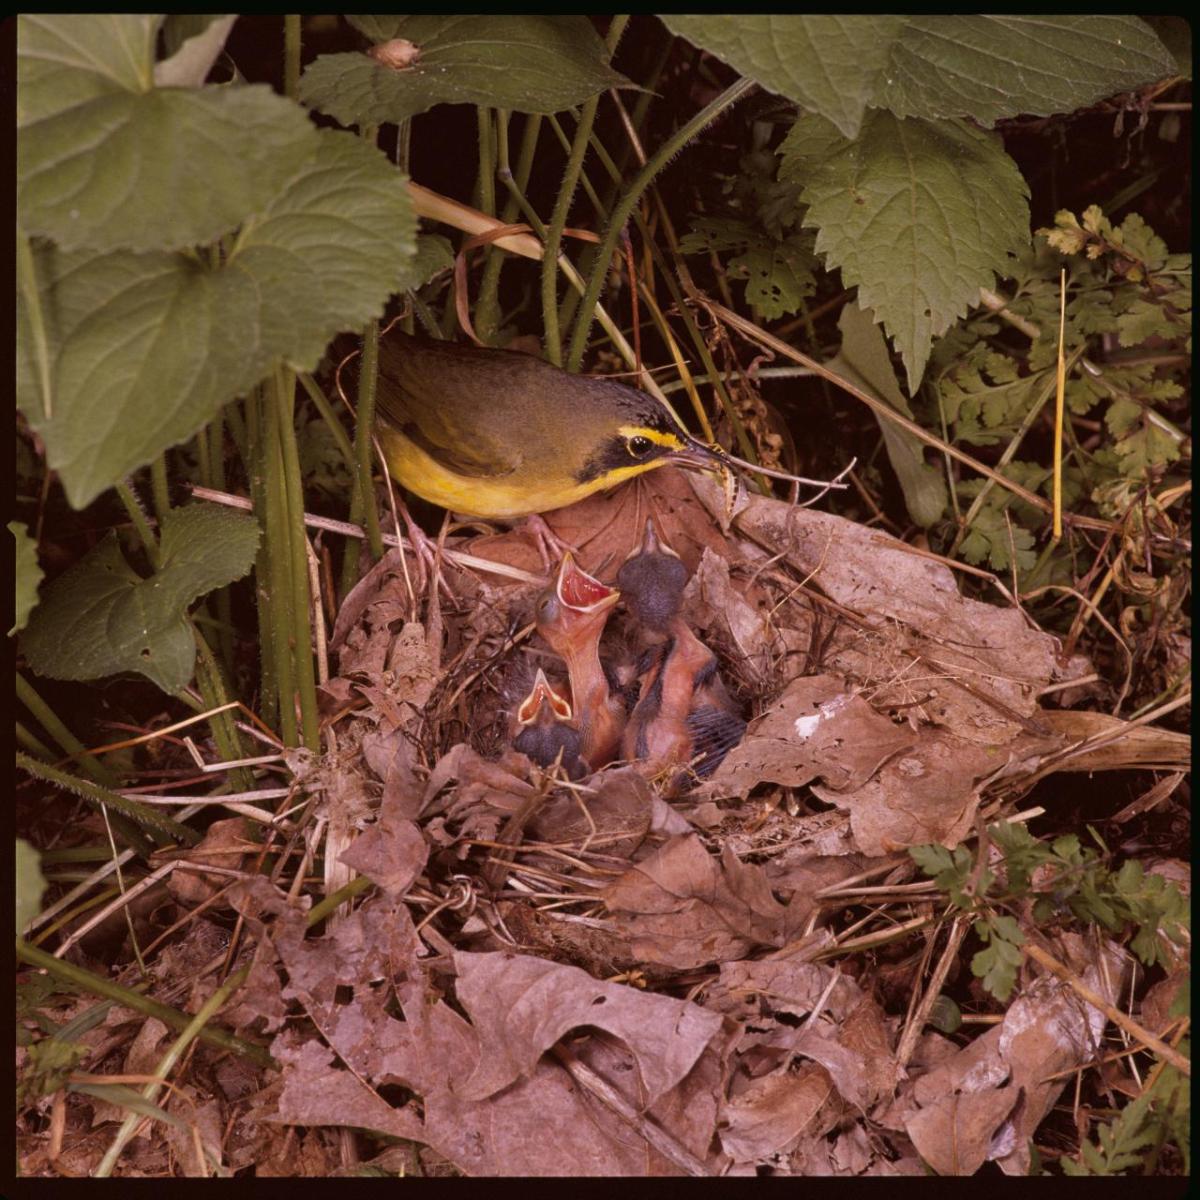 Kentucky warbler birds in a nest